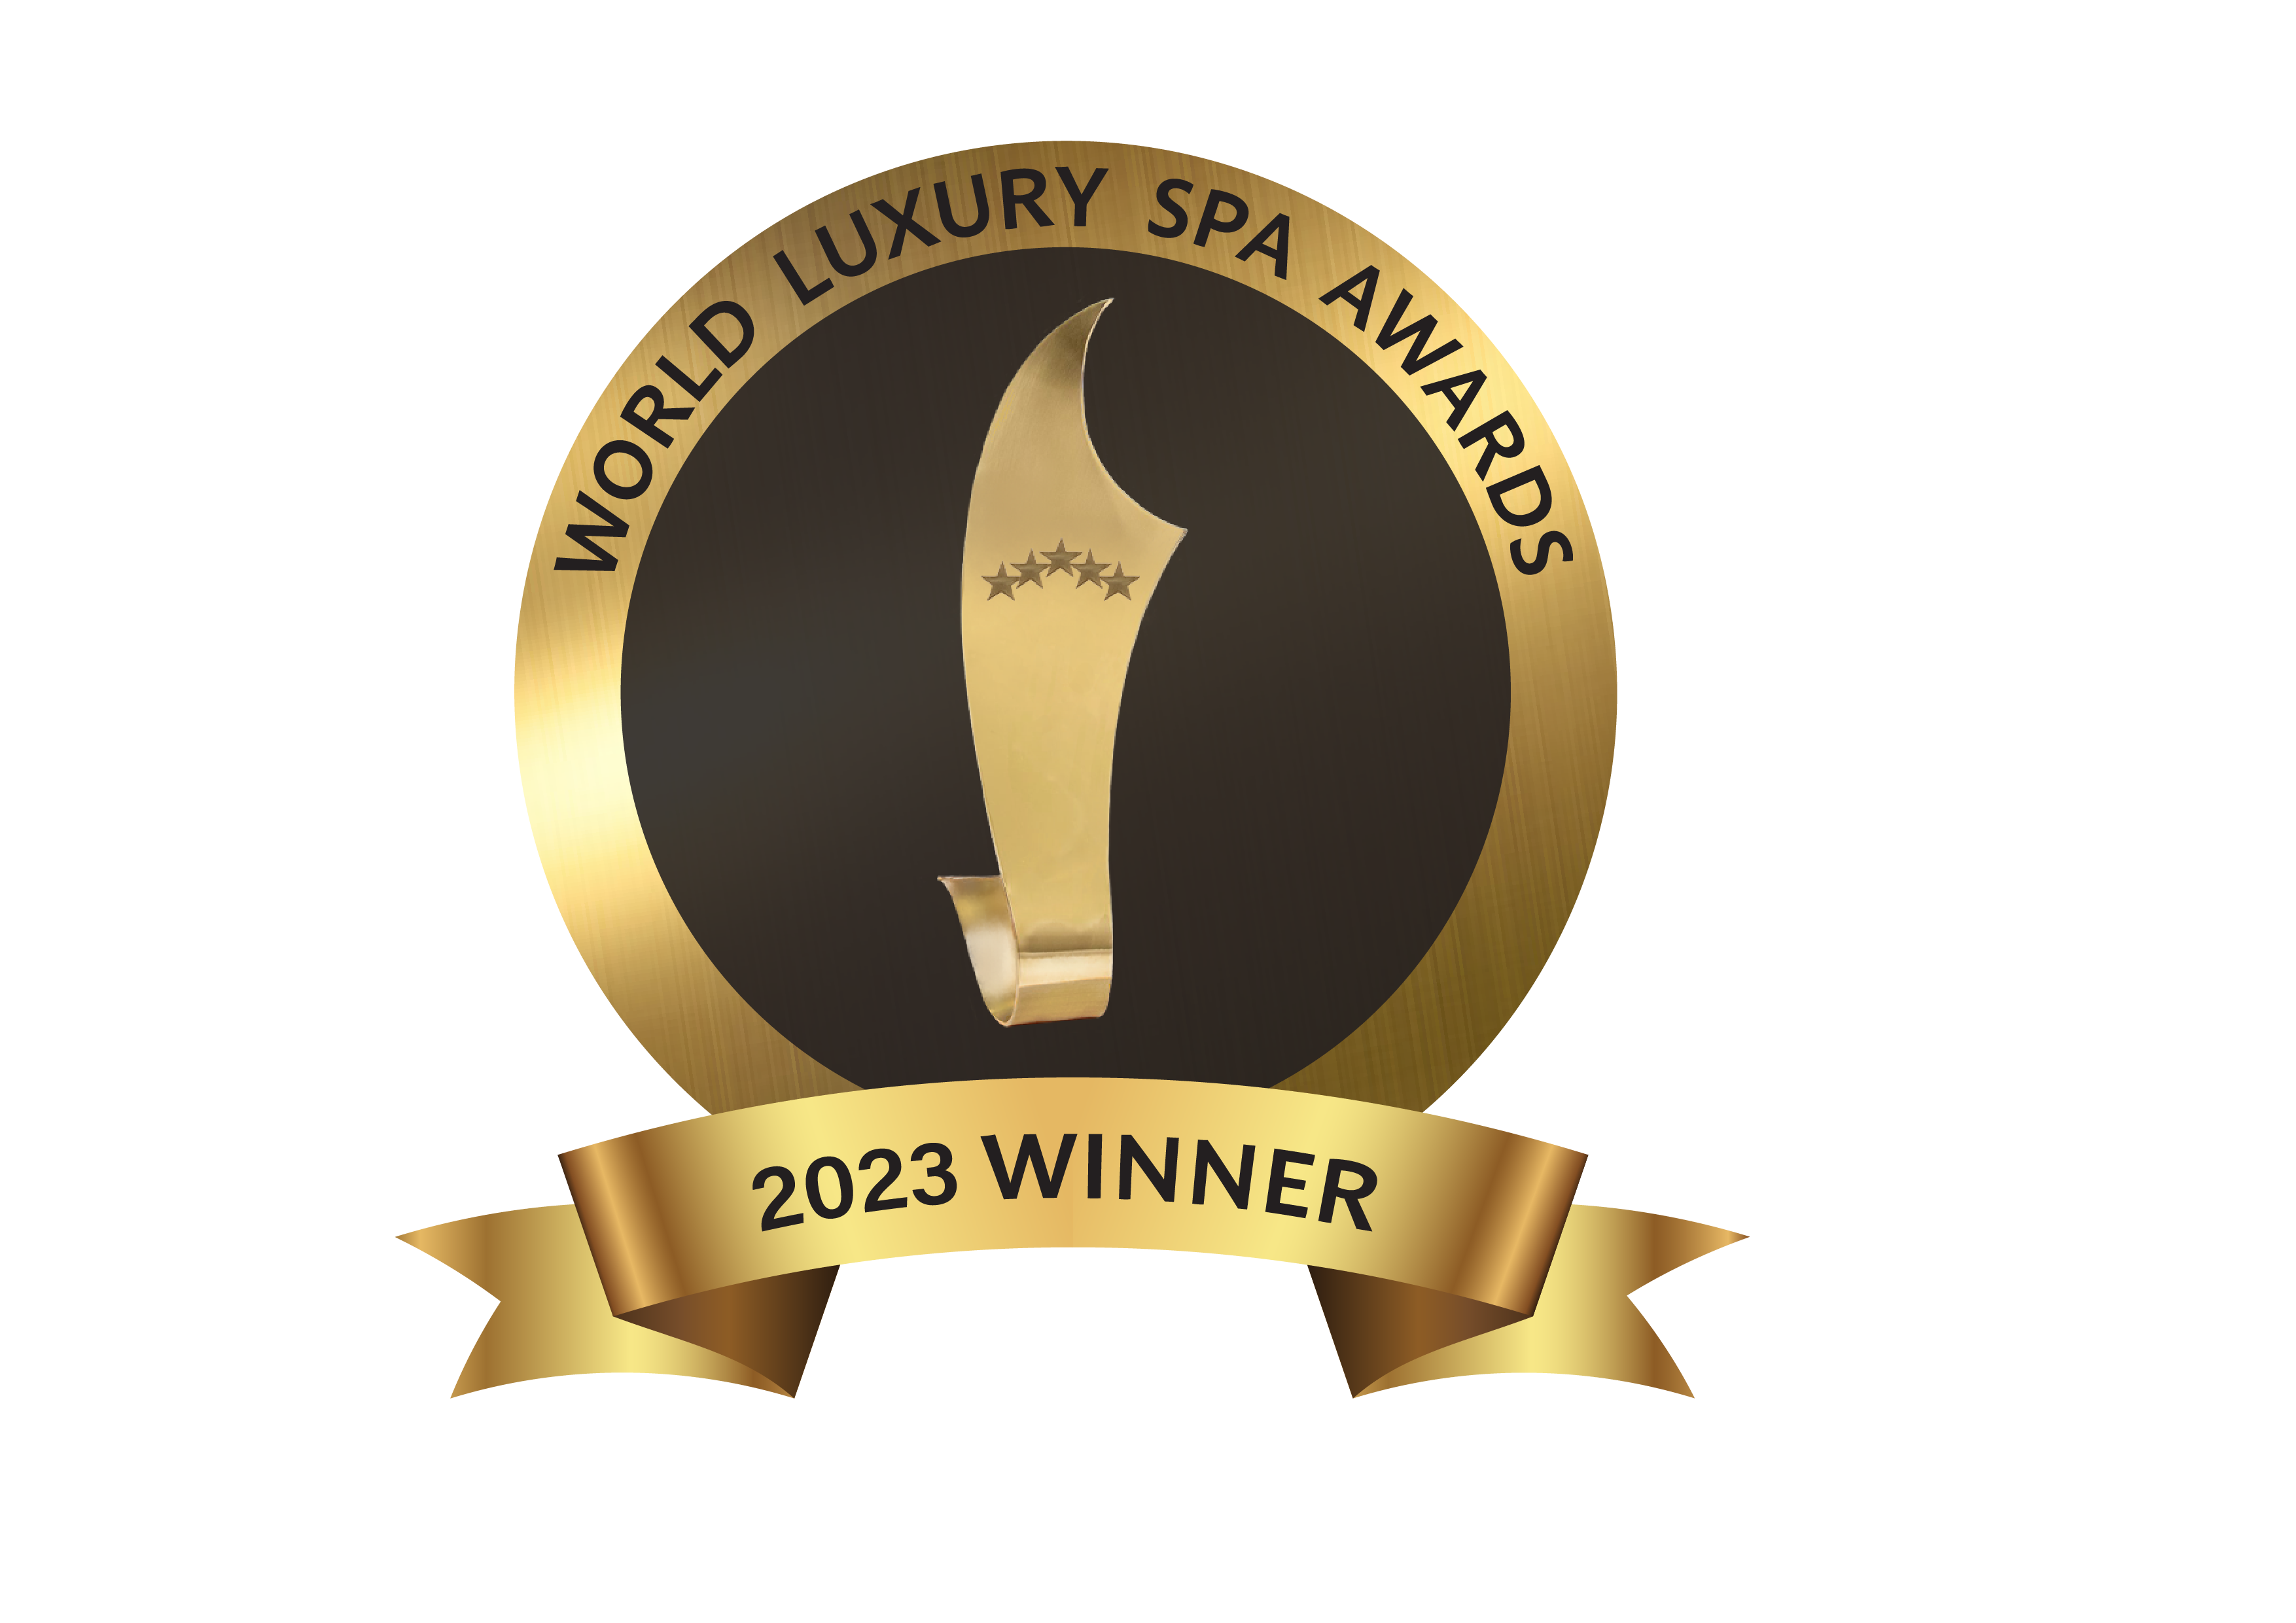 World Luxury Spa Awards 2023 Winner ribbon/medal design